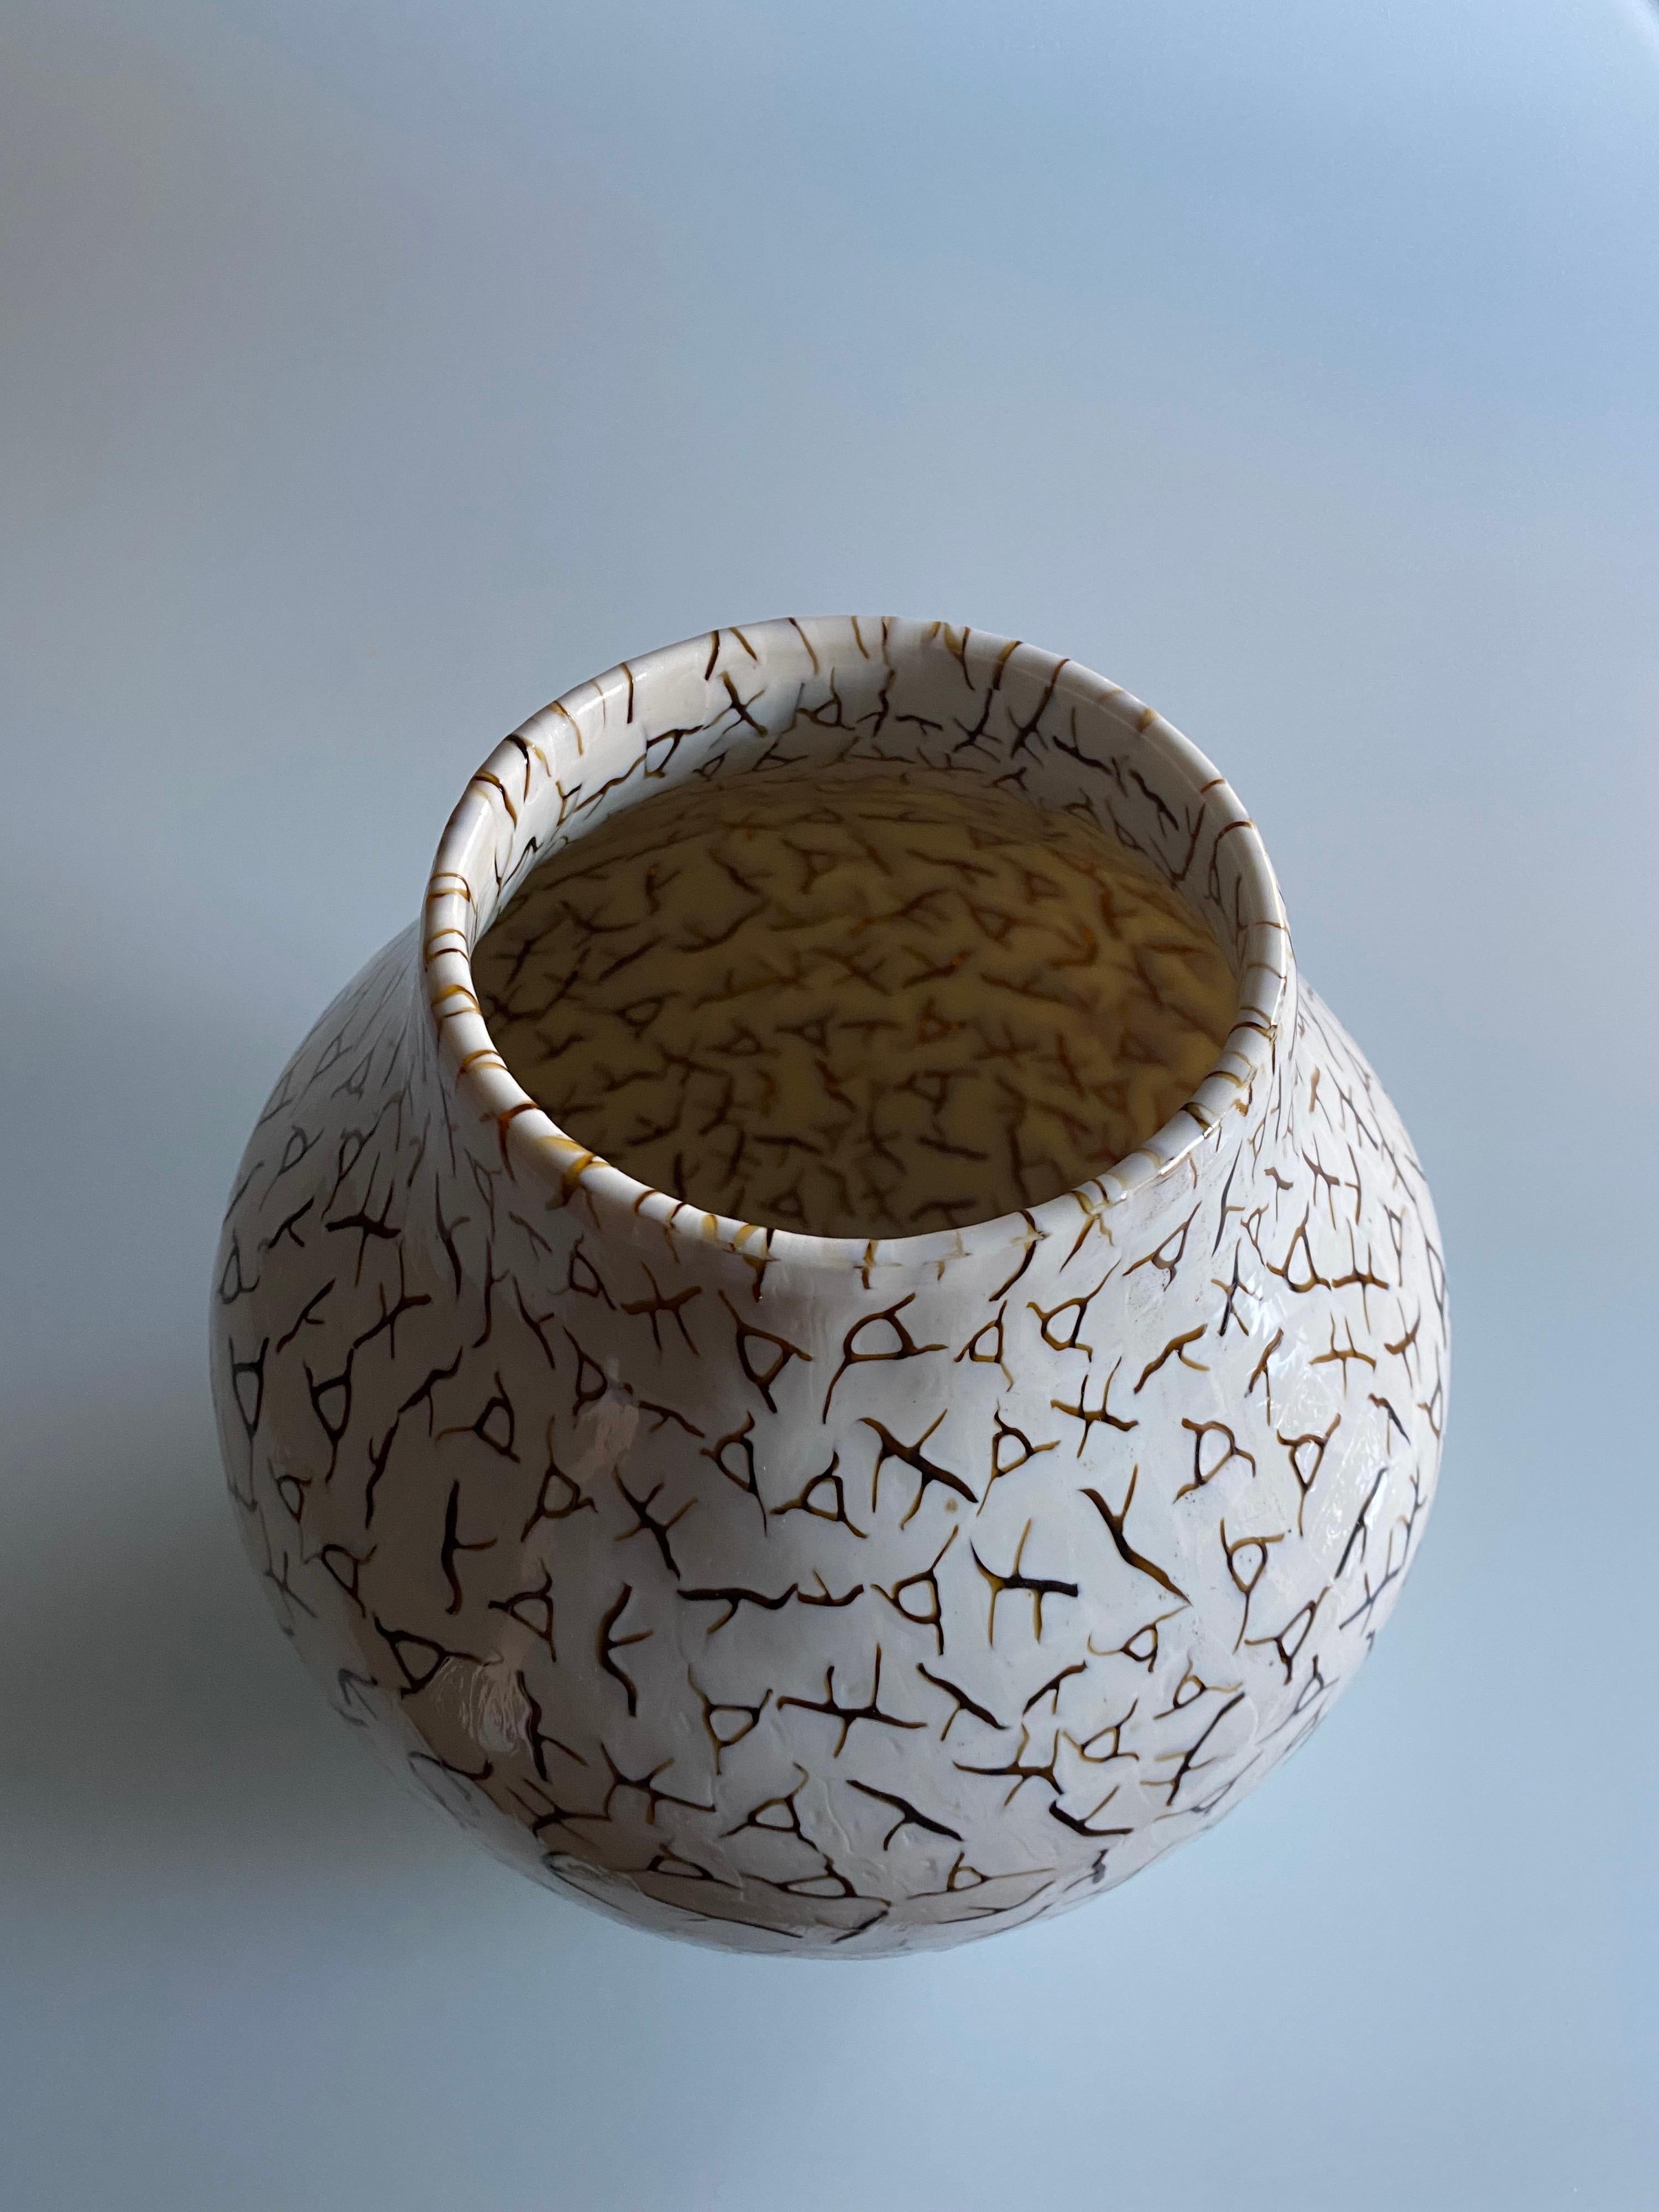 Coccio vase designed by Alessandro Diaz de Santillana for Venini. The handmade blown glass with 